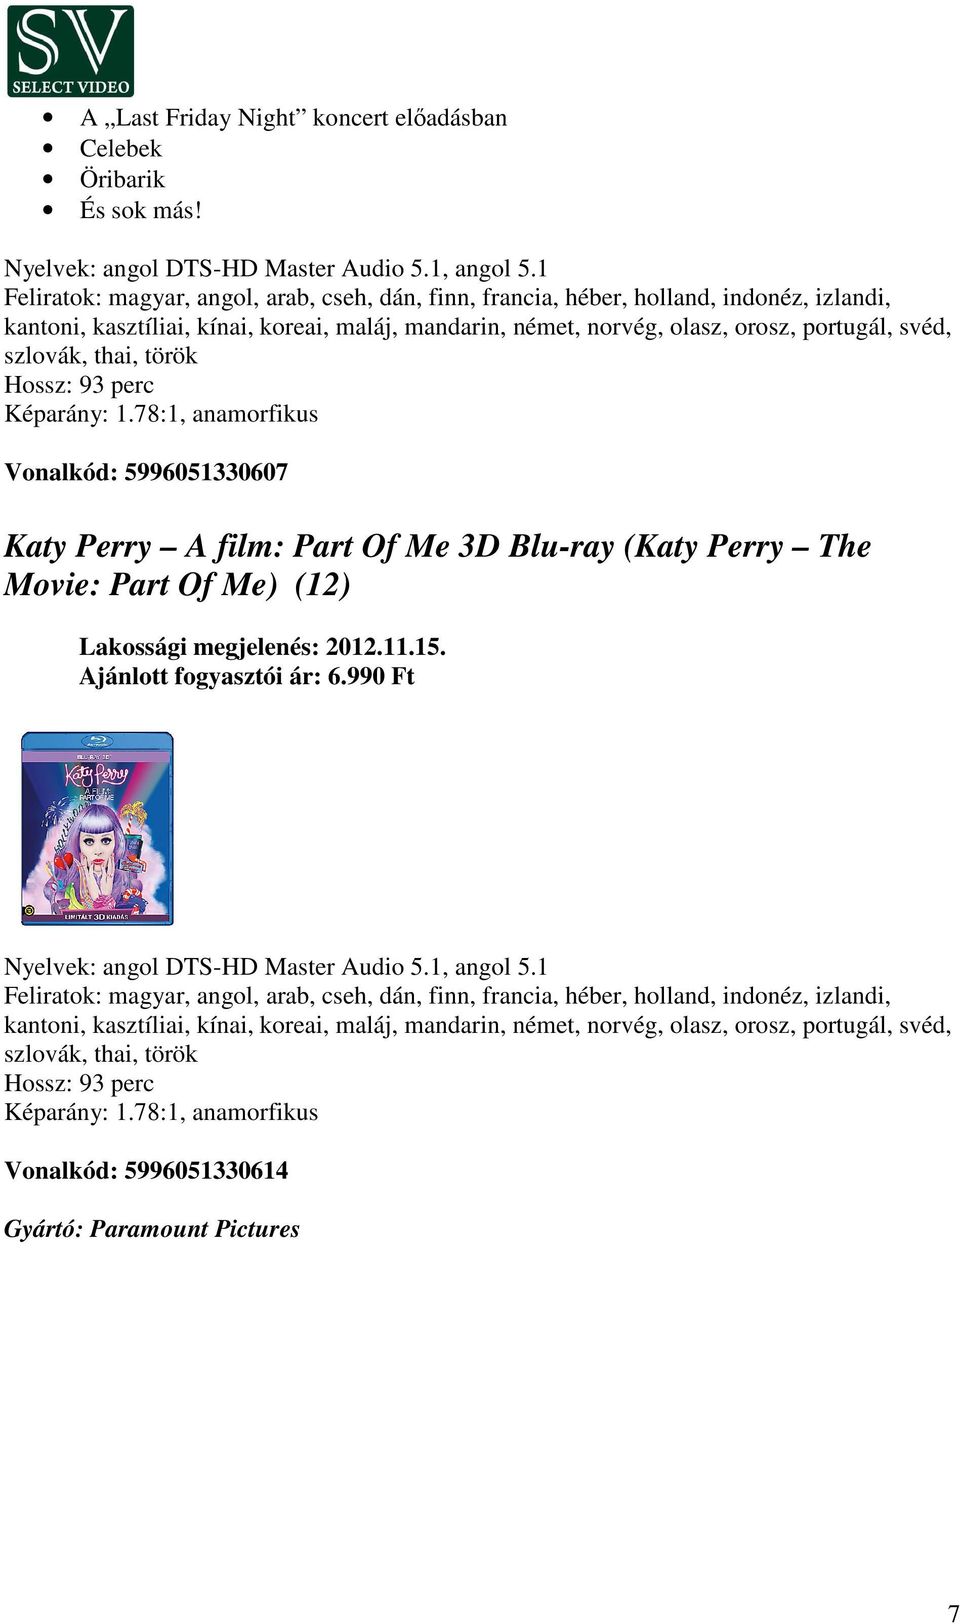 szlovák, thai, török Hossz: 93 perc Képarány: 1.78:1, anamorfikus Vonalkód: 5996051330607 Katy Perry A film: Part Of Me 3D Blu-ray (Katy Perry The Movie: Part Of Me) (12) Ajánlott fogyasztói ár: 6.